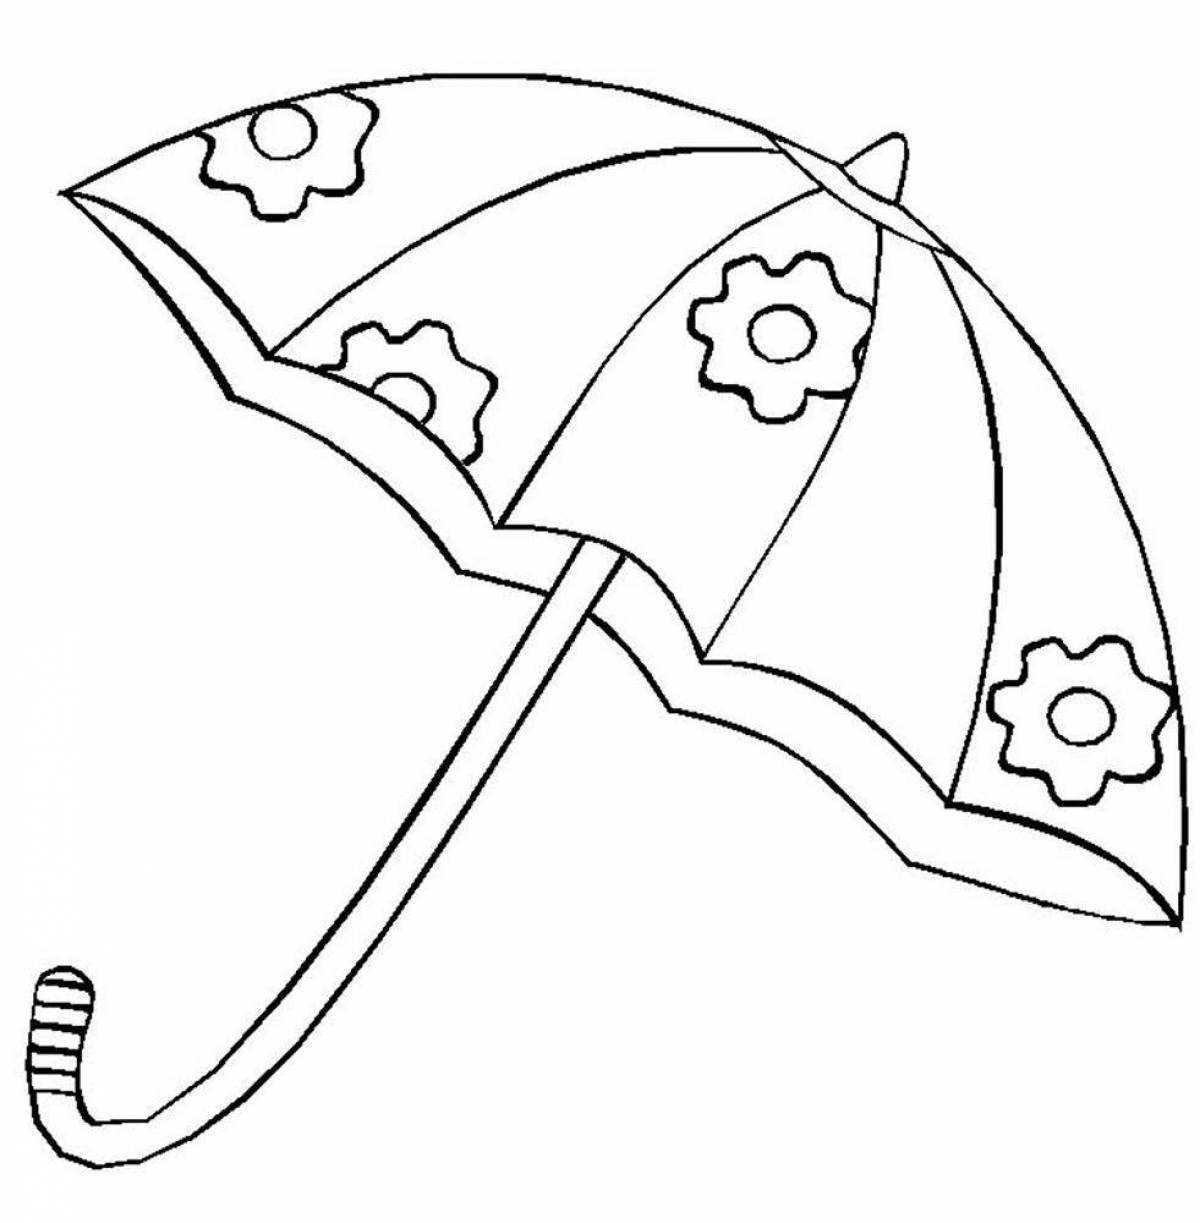 Красочная и солнечная раскраска зонтик для детей